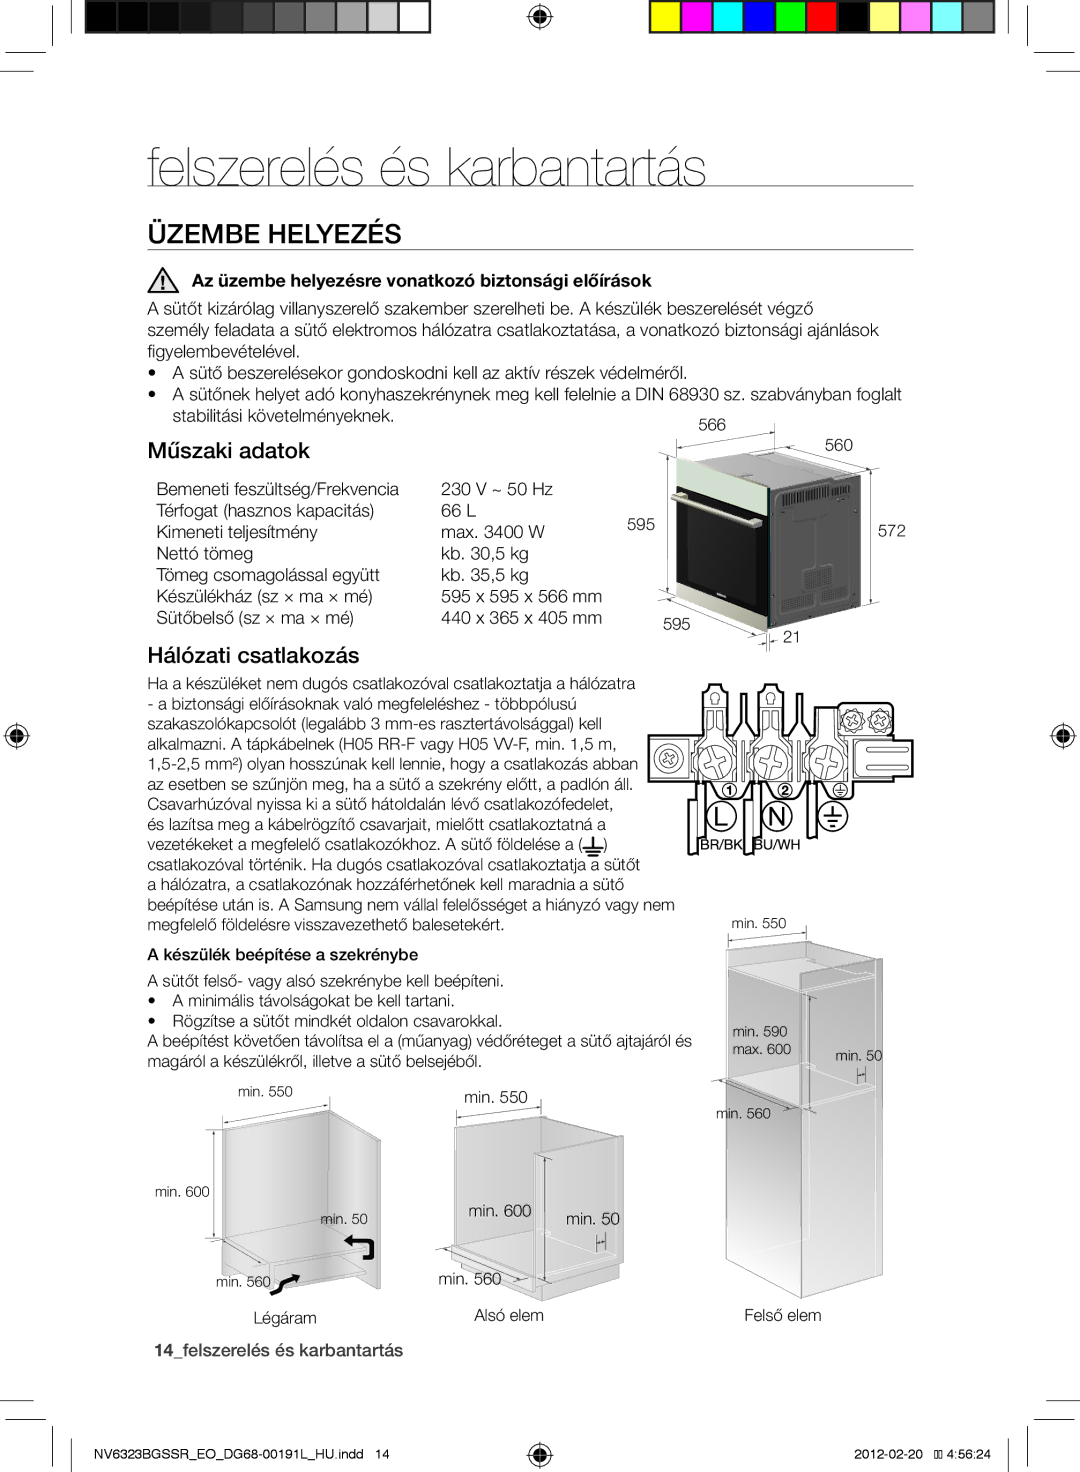 Samsung NV6353BGSSR/EO manual Üzembe helyezés, Műszaki adatok, Hálózati csatlakozás, 14felszerelés és karbantartás 